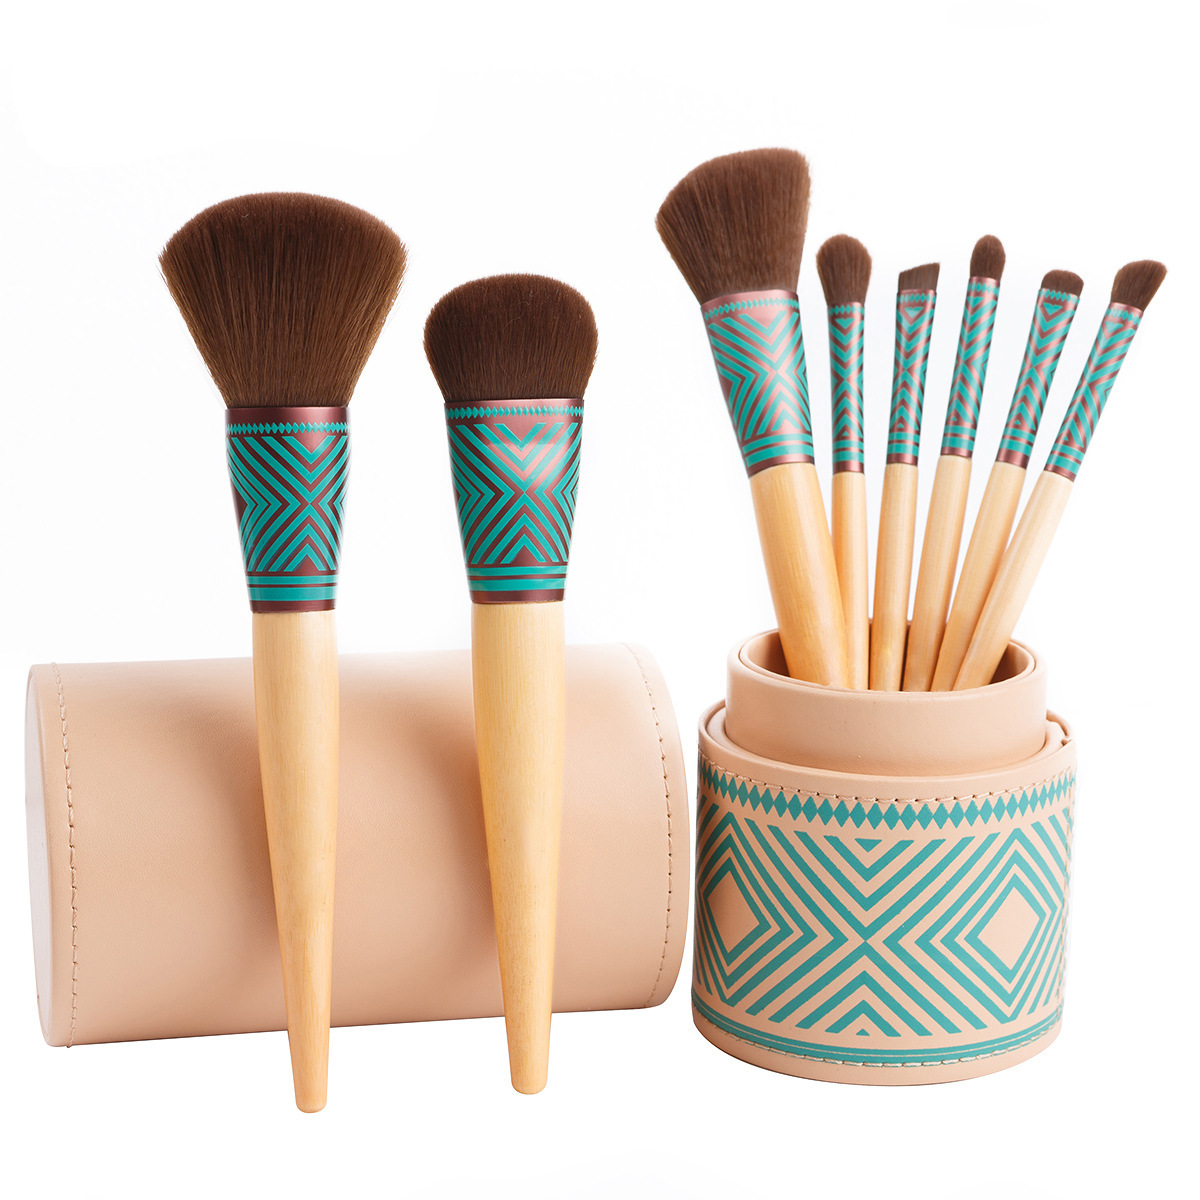 bamboo makeup brush set